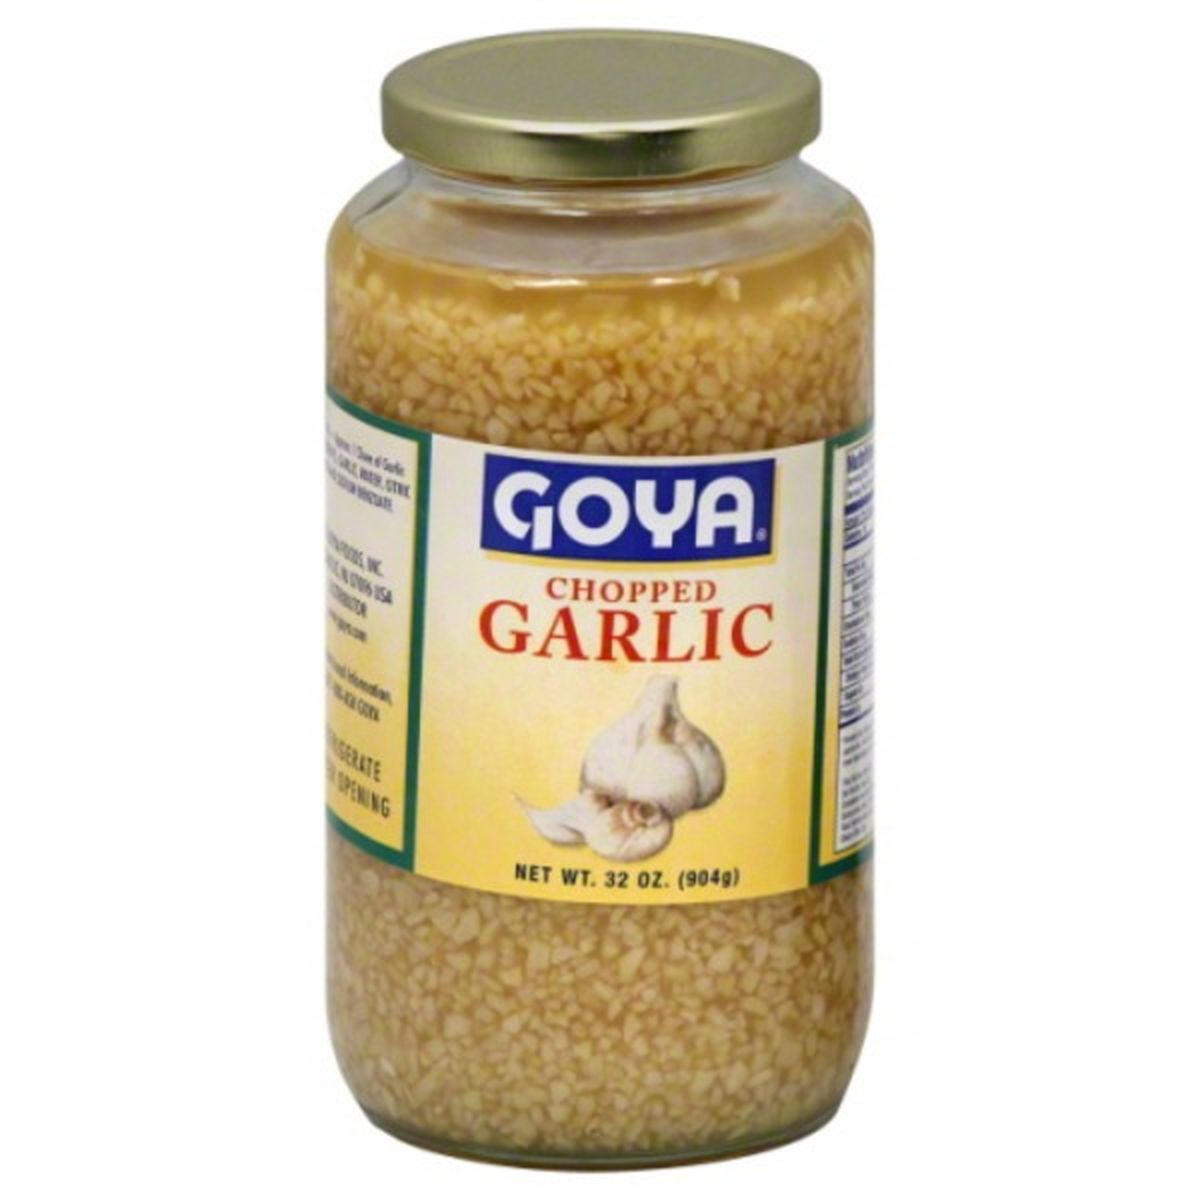 Calories in Goya Garlic, Chopped